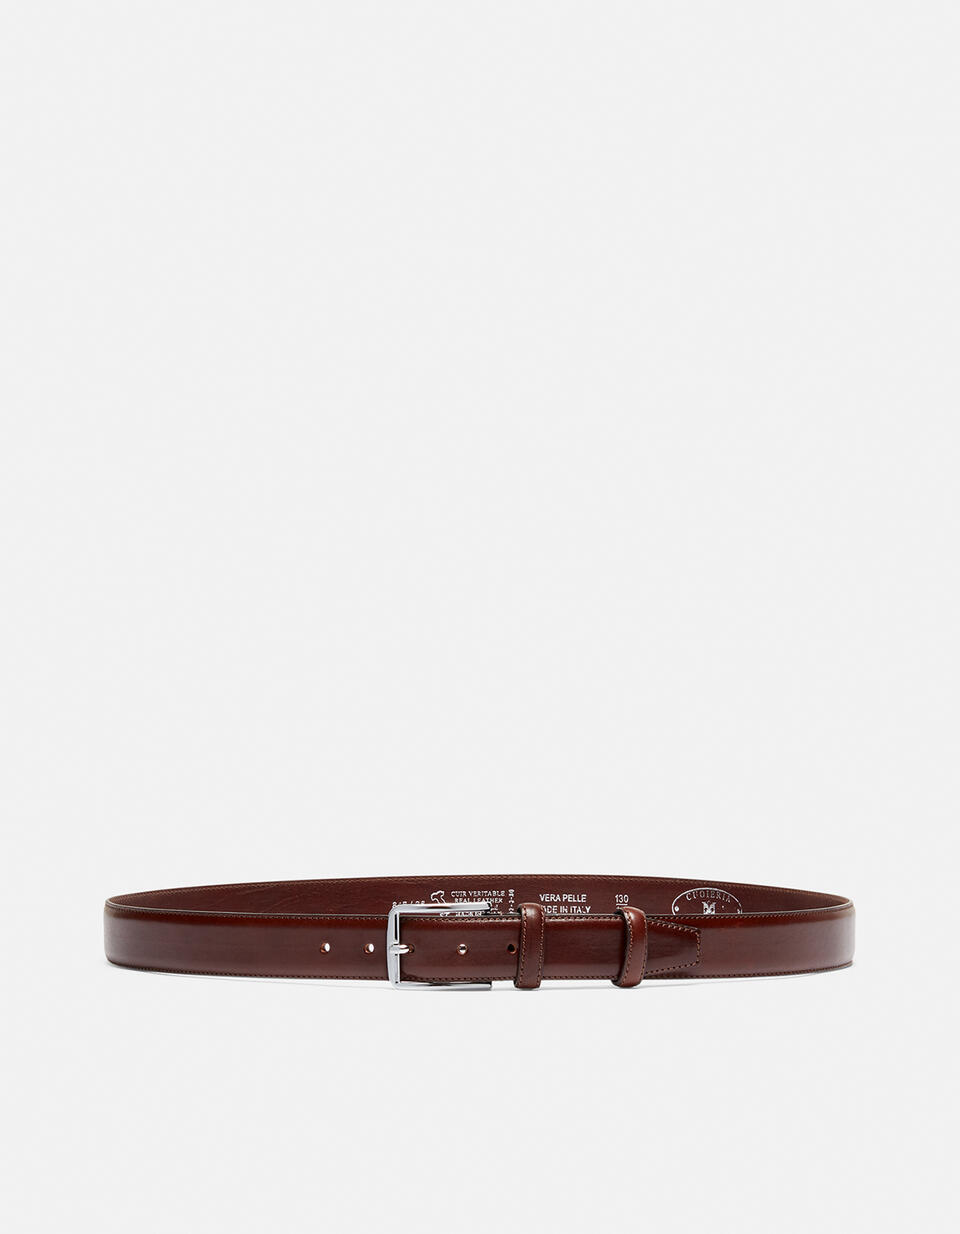 Cintura Elegante in Pelle con Punta quadra alta 3,5 cm  - Cinture Uomo - Cinture - Cuoieria Fiorentina